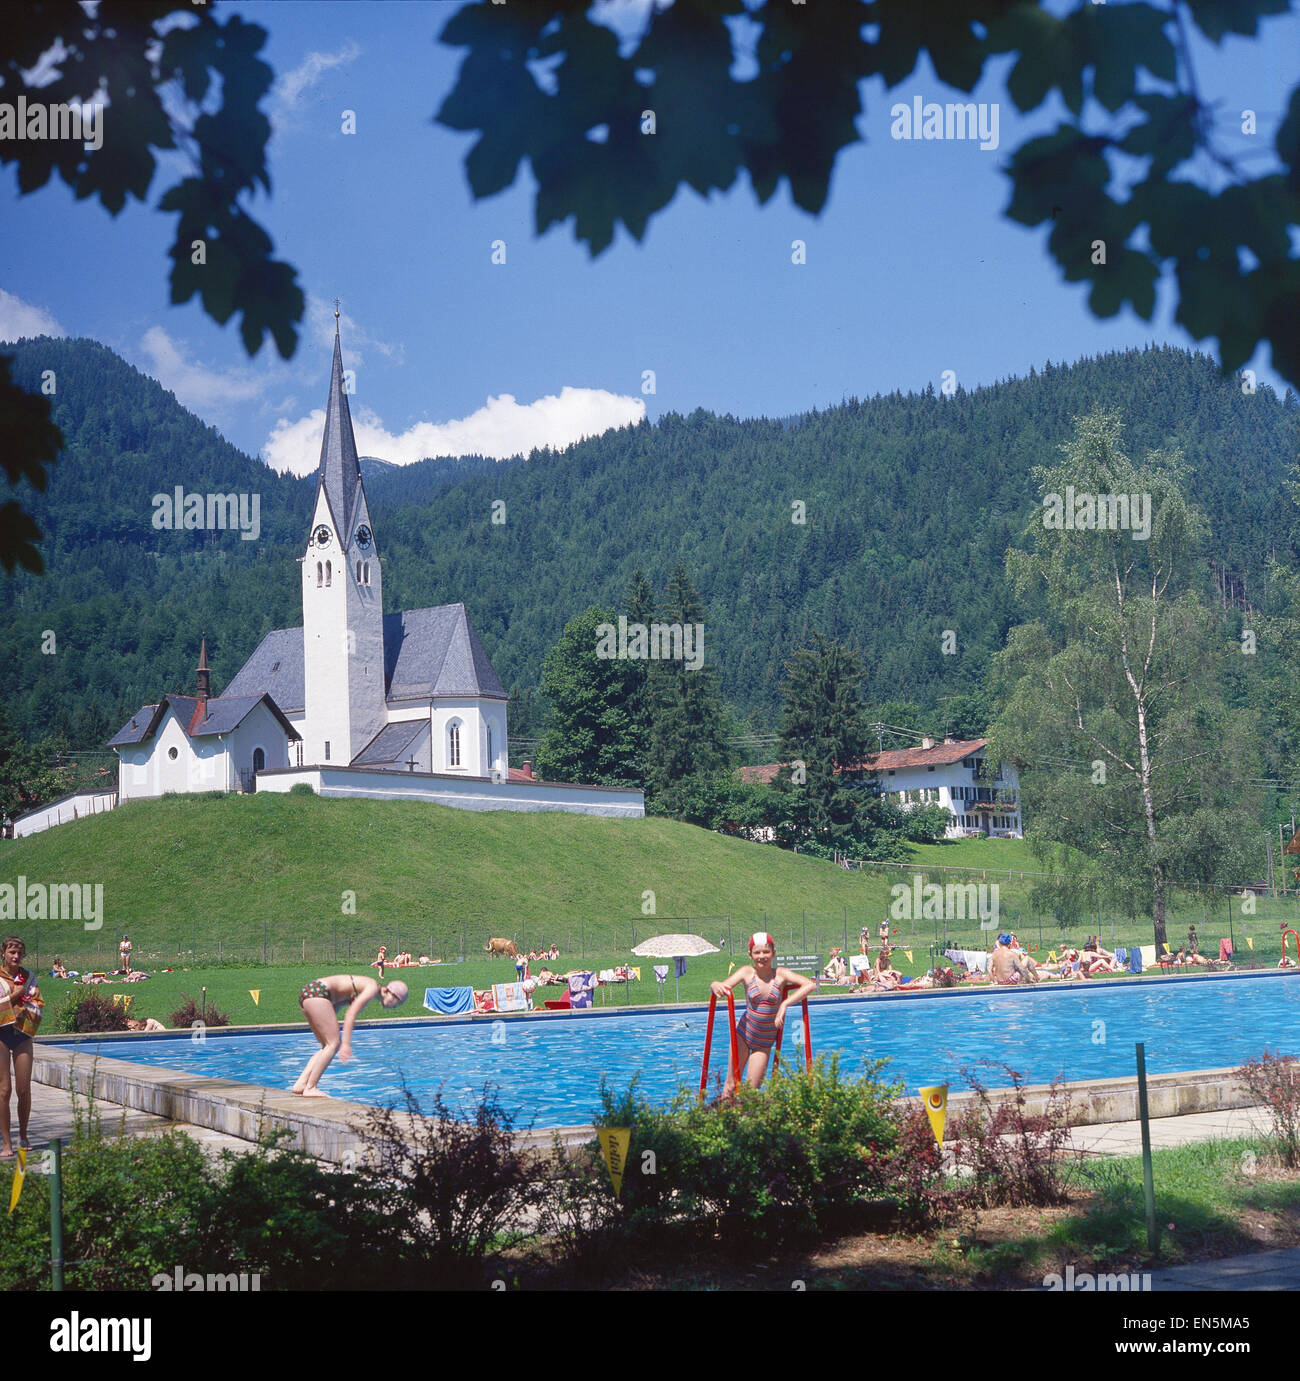 Deutschland, Bayern, Bad Kreuth, Schwimmbad in Bad Kreuth Stock Photo